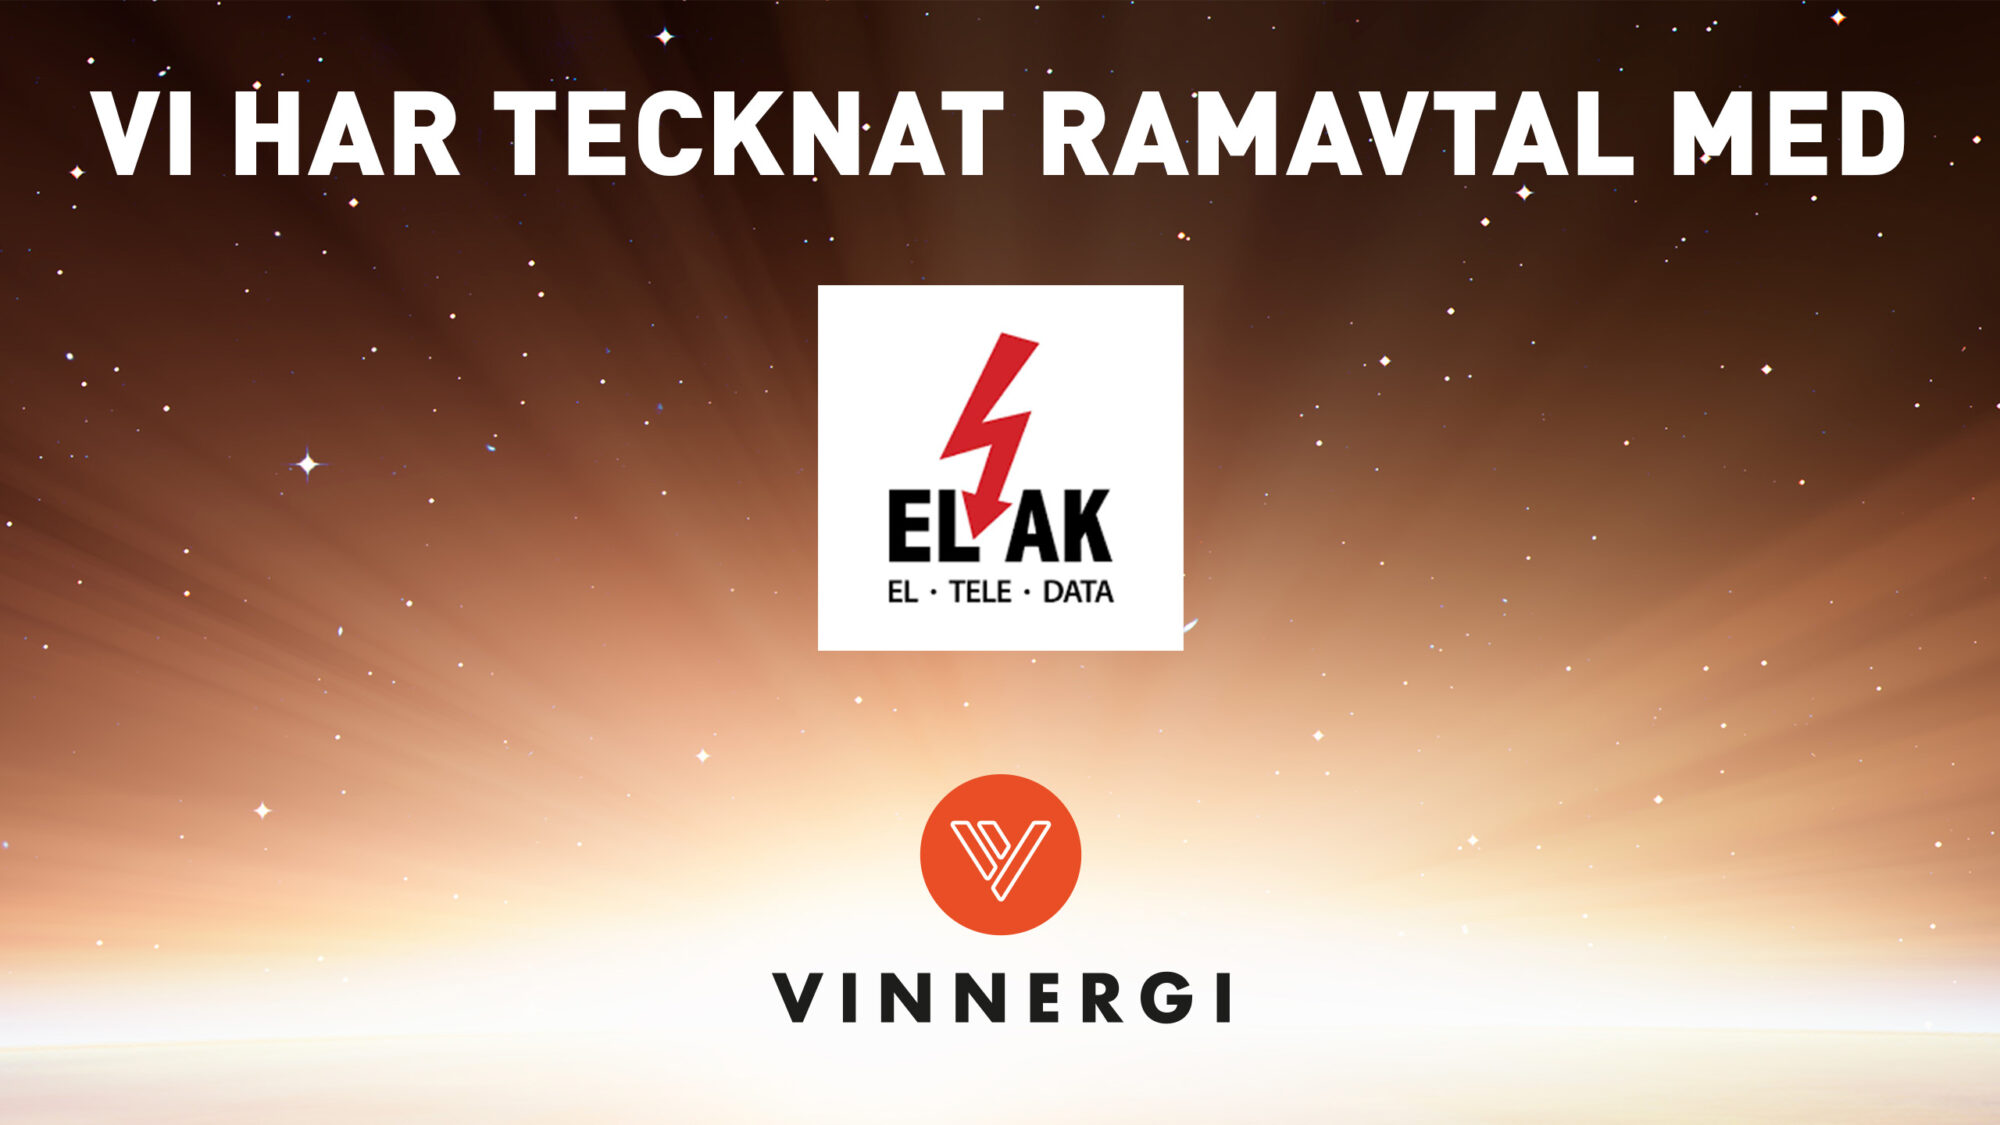 Vinnergi tecknar ramavtal med ELAK om tekniska konsulttjänster